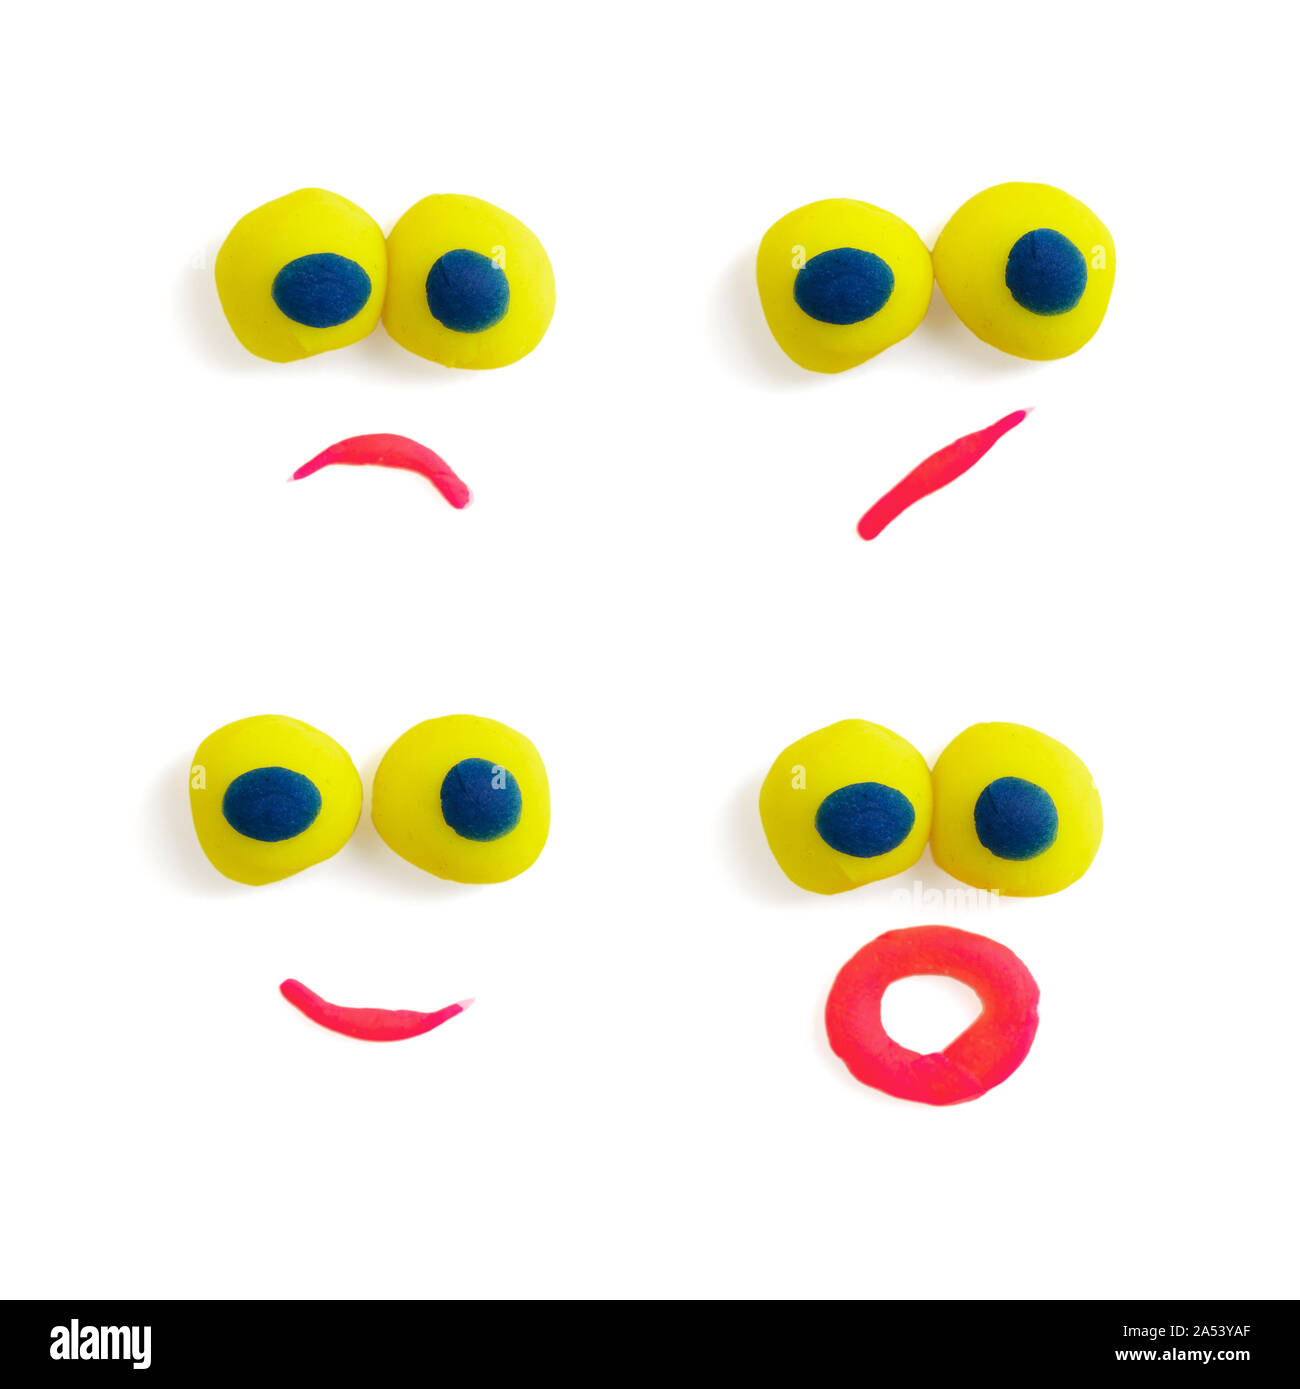 Vier lustige Gesichter - Augen und Mund - aus bunten Knetmasse mit unterschiedlichen Ausdrücke auf dem weißen Hintergrund. Stockfoto